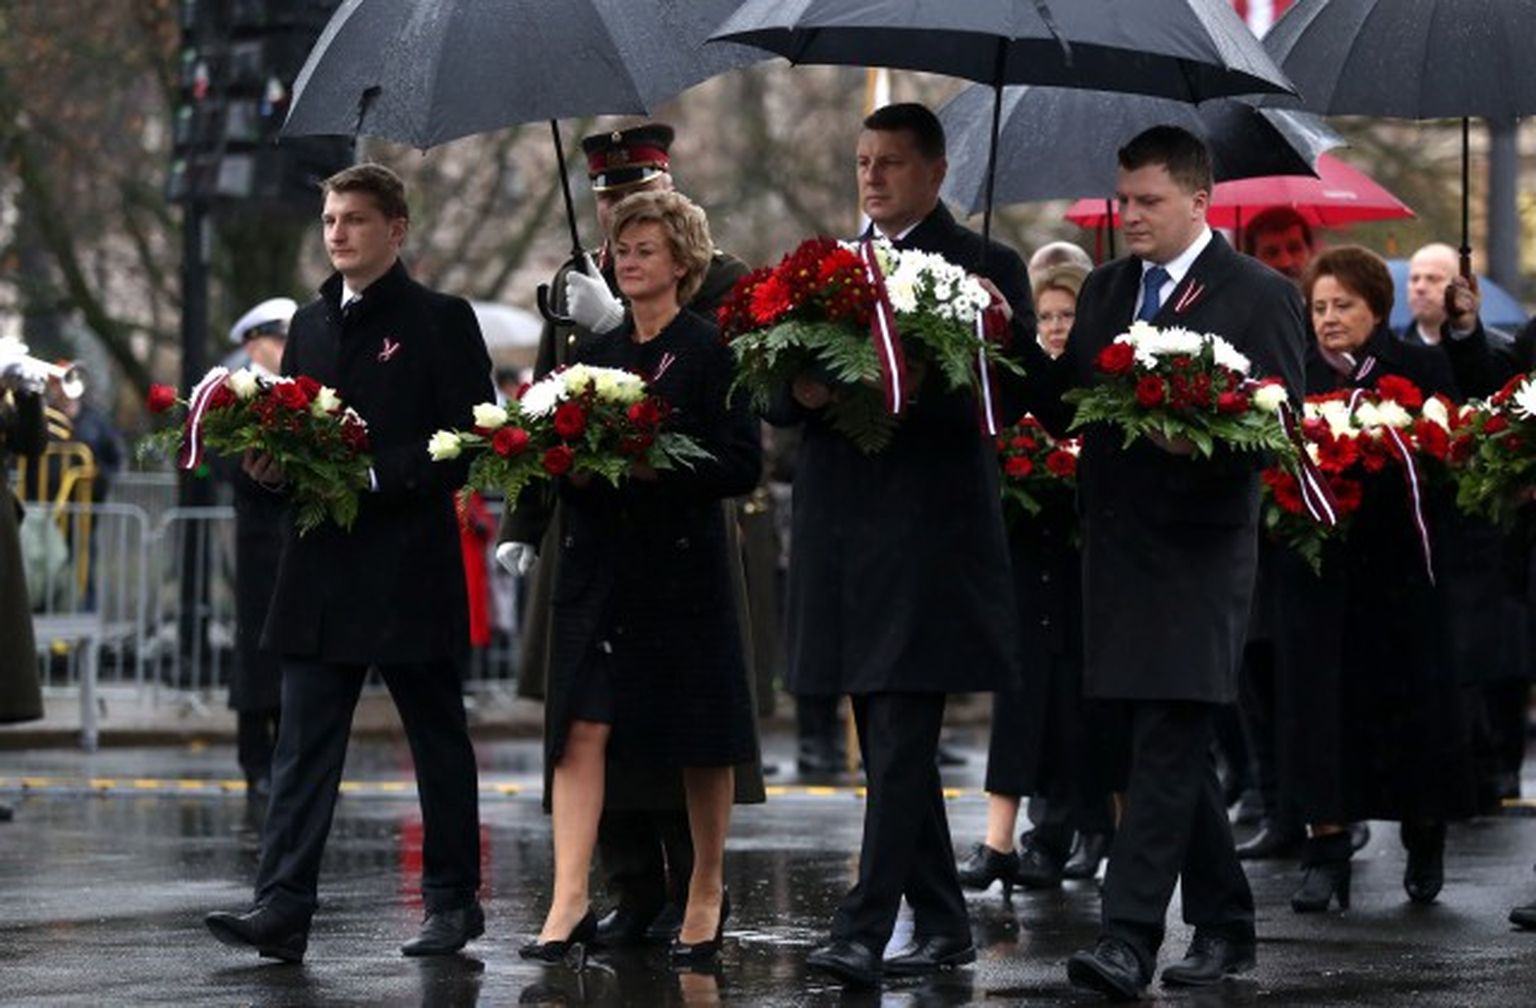 Valsts prezidents Raimonds Vējonis ar kundzi Ivetu Vējoni un dēliem dodas nolikt ziedus pie Brīvības pieminekļa par godu Latvijas proklamēšanas 97.gadadienai